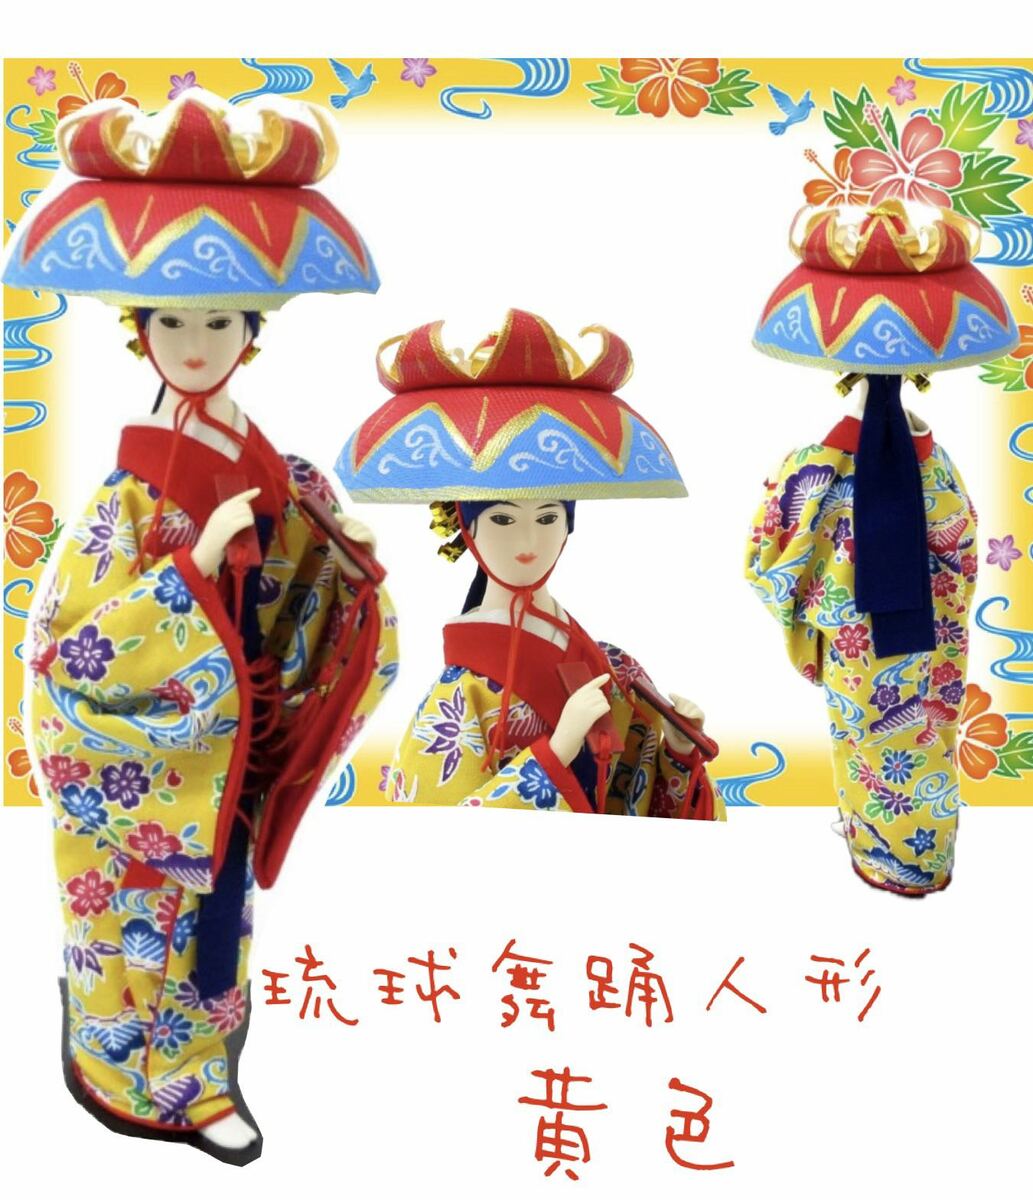 琉球舞踊　沖縄紅型着物　日本人形【お土産】【置物】【黄色】 沖縄の紅型着物と花笠のきれいなお顔のお人形 日本ならではのきれいな美しいお顔の日本人形沖縄伝統のキレイな着物、琉球紅型をまとって、頭には花笠を被り琉球舞踊の美しさを表現海外の方へのお土産にも大人気の商品です。専用のパッケージボックスに入っているので、プレゼントとして送ることもできます。商品情報本体サイズ　10.0cm×25.0cm×10.0cmパッケージボックスサイズ　10.5cm×27.5cm×11.0cm着物素材　綿、ポリエステル台座　MDF　注意点直射日光の当たる場所での保管は変色の原因となりますので、ご注意ください。光の関係などで、写真の画像と実物が若干異なる場合がございます。人形の顔は一体一体異なります。顔は選べませんのでご了承ください。 2